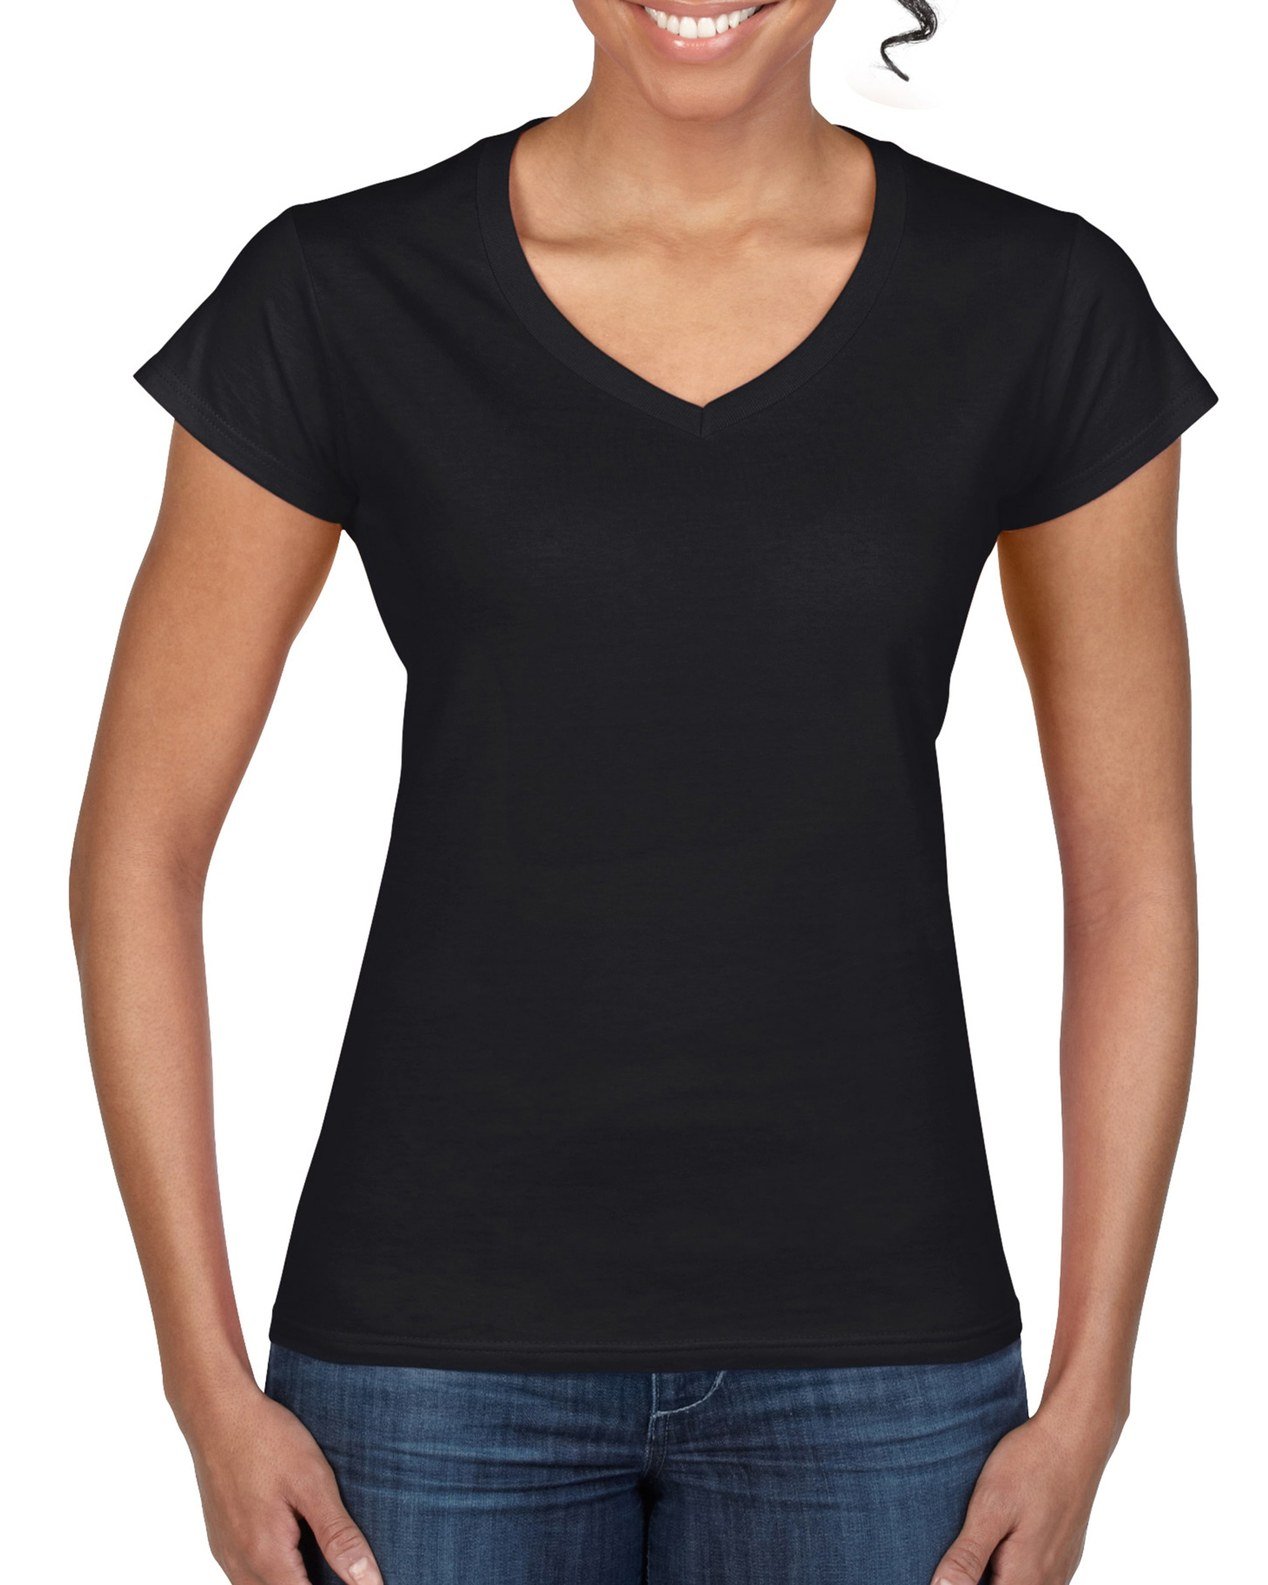 Best V-neck T-shirts for Women, In Bulk